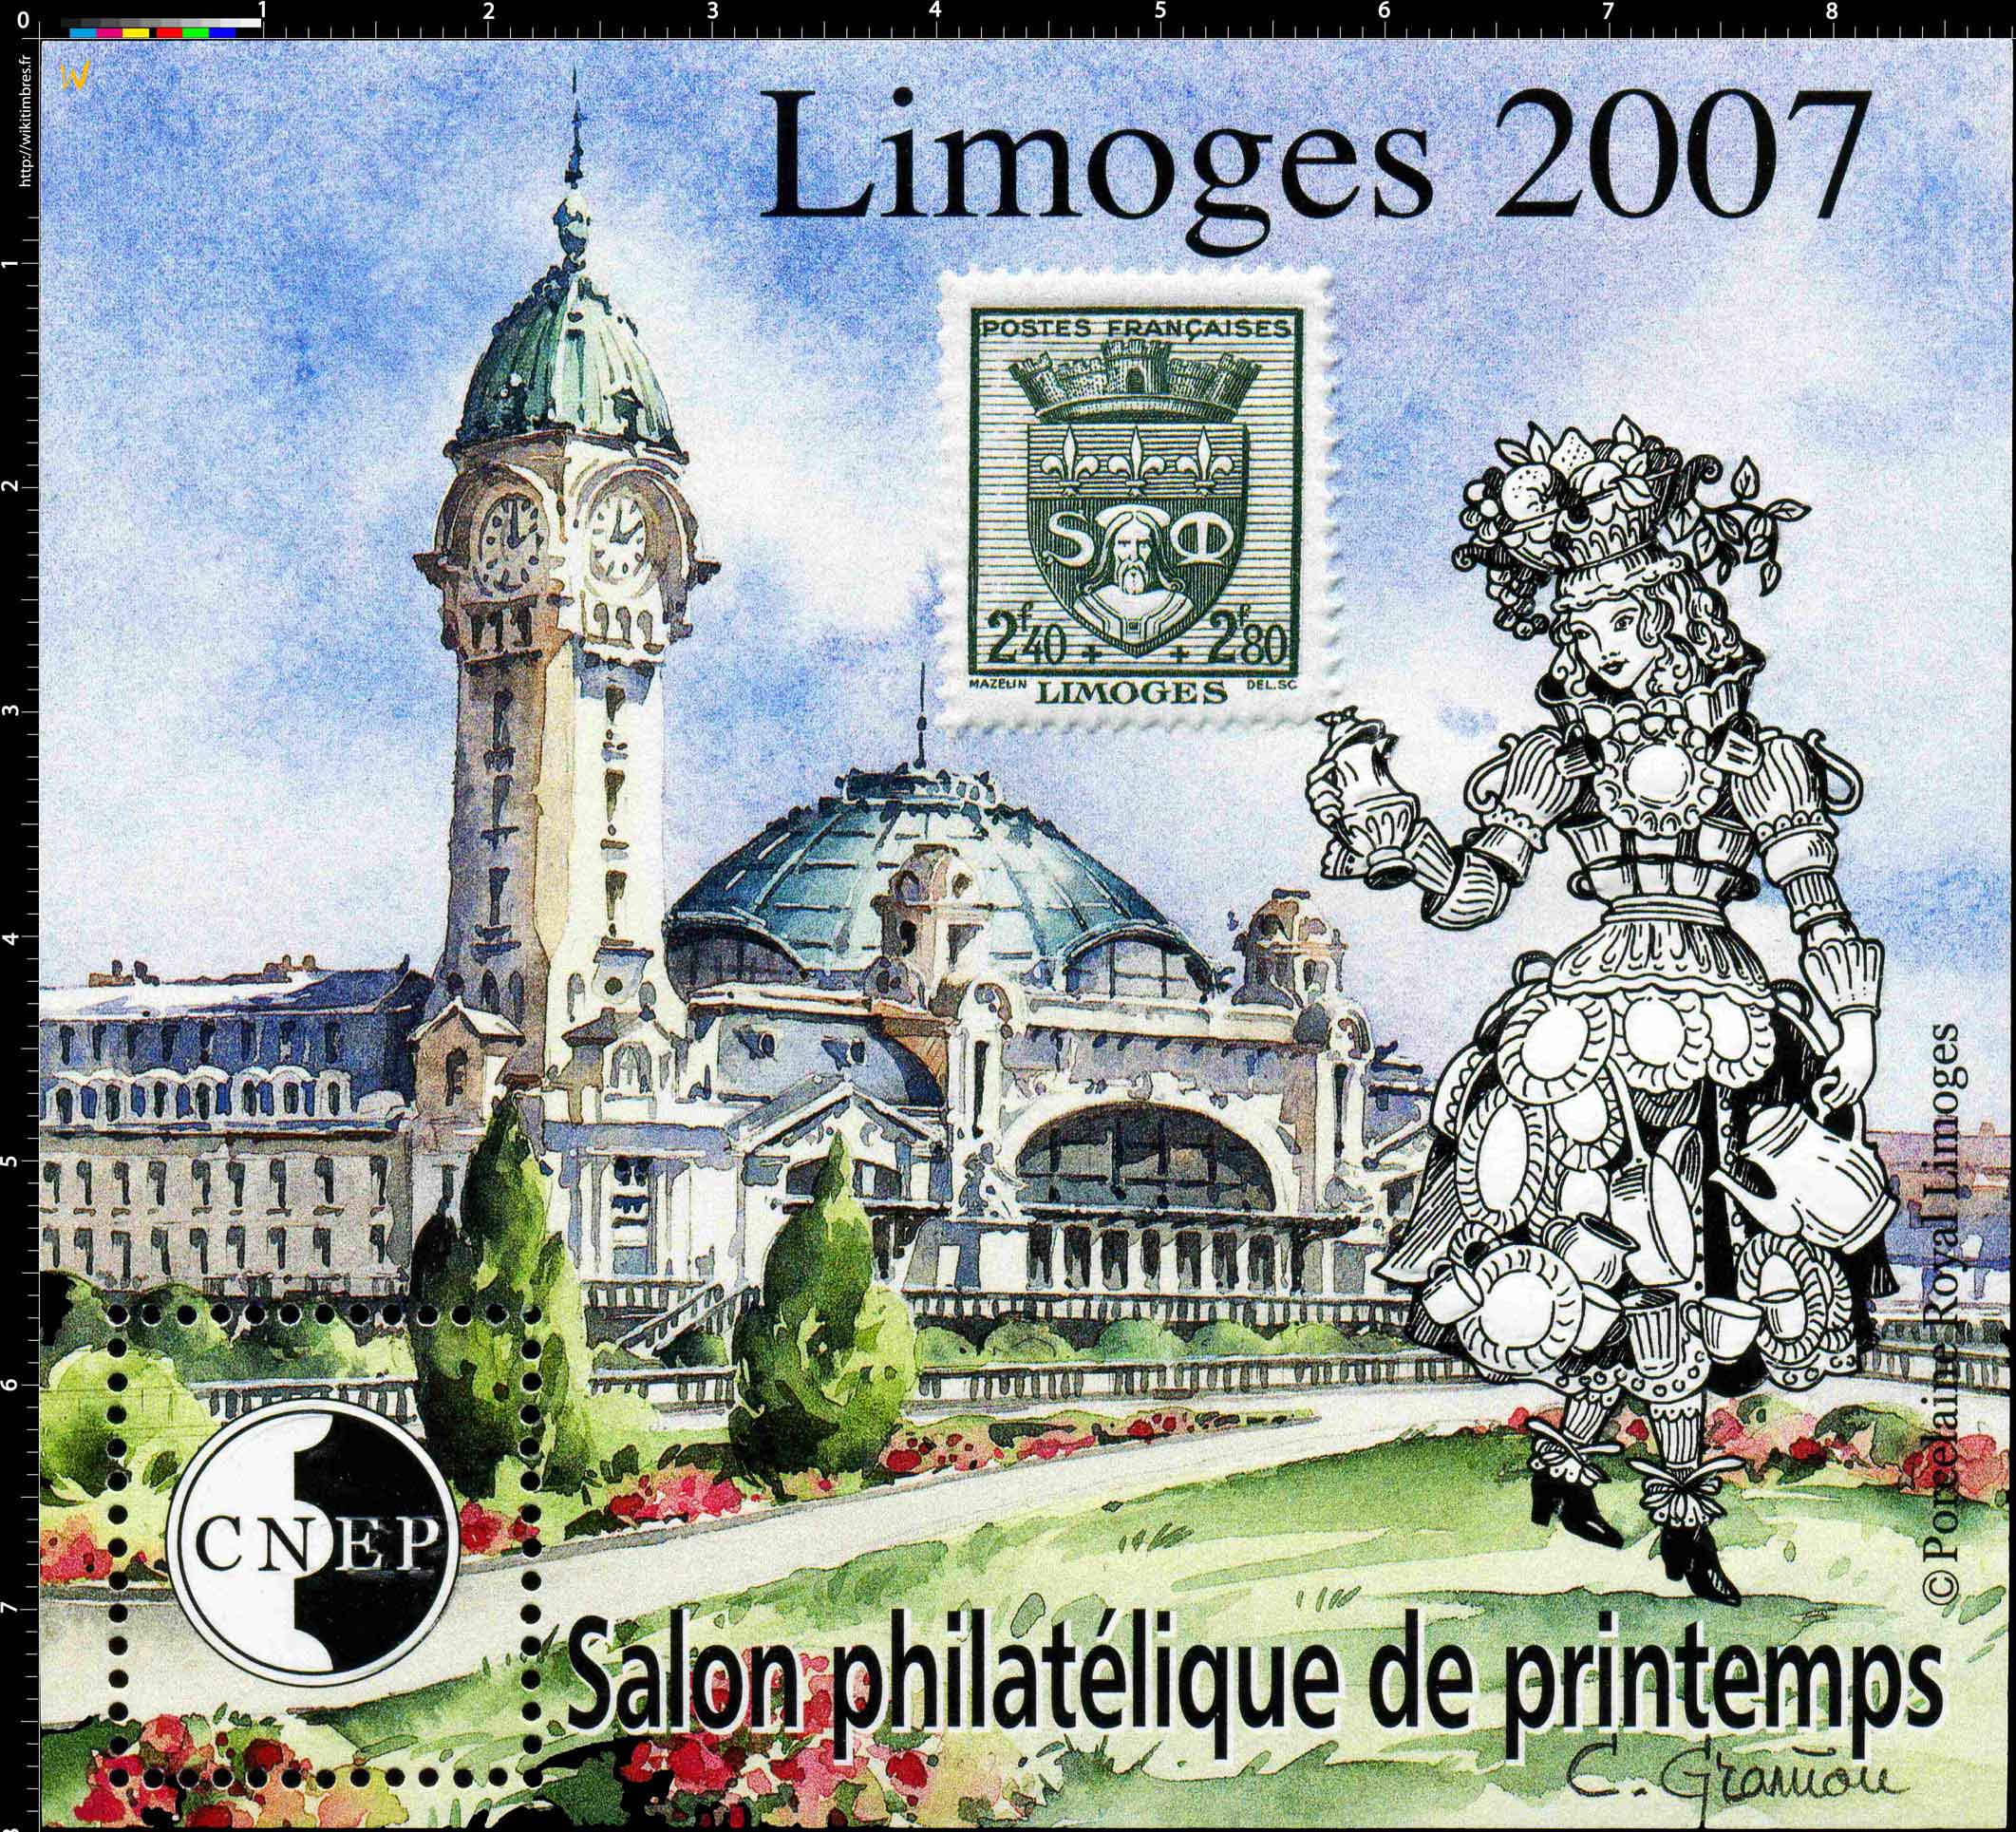 2007 Salon philatélique de printemps Limoges CNEP